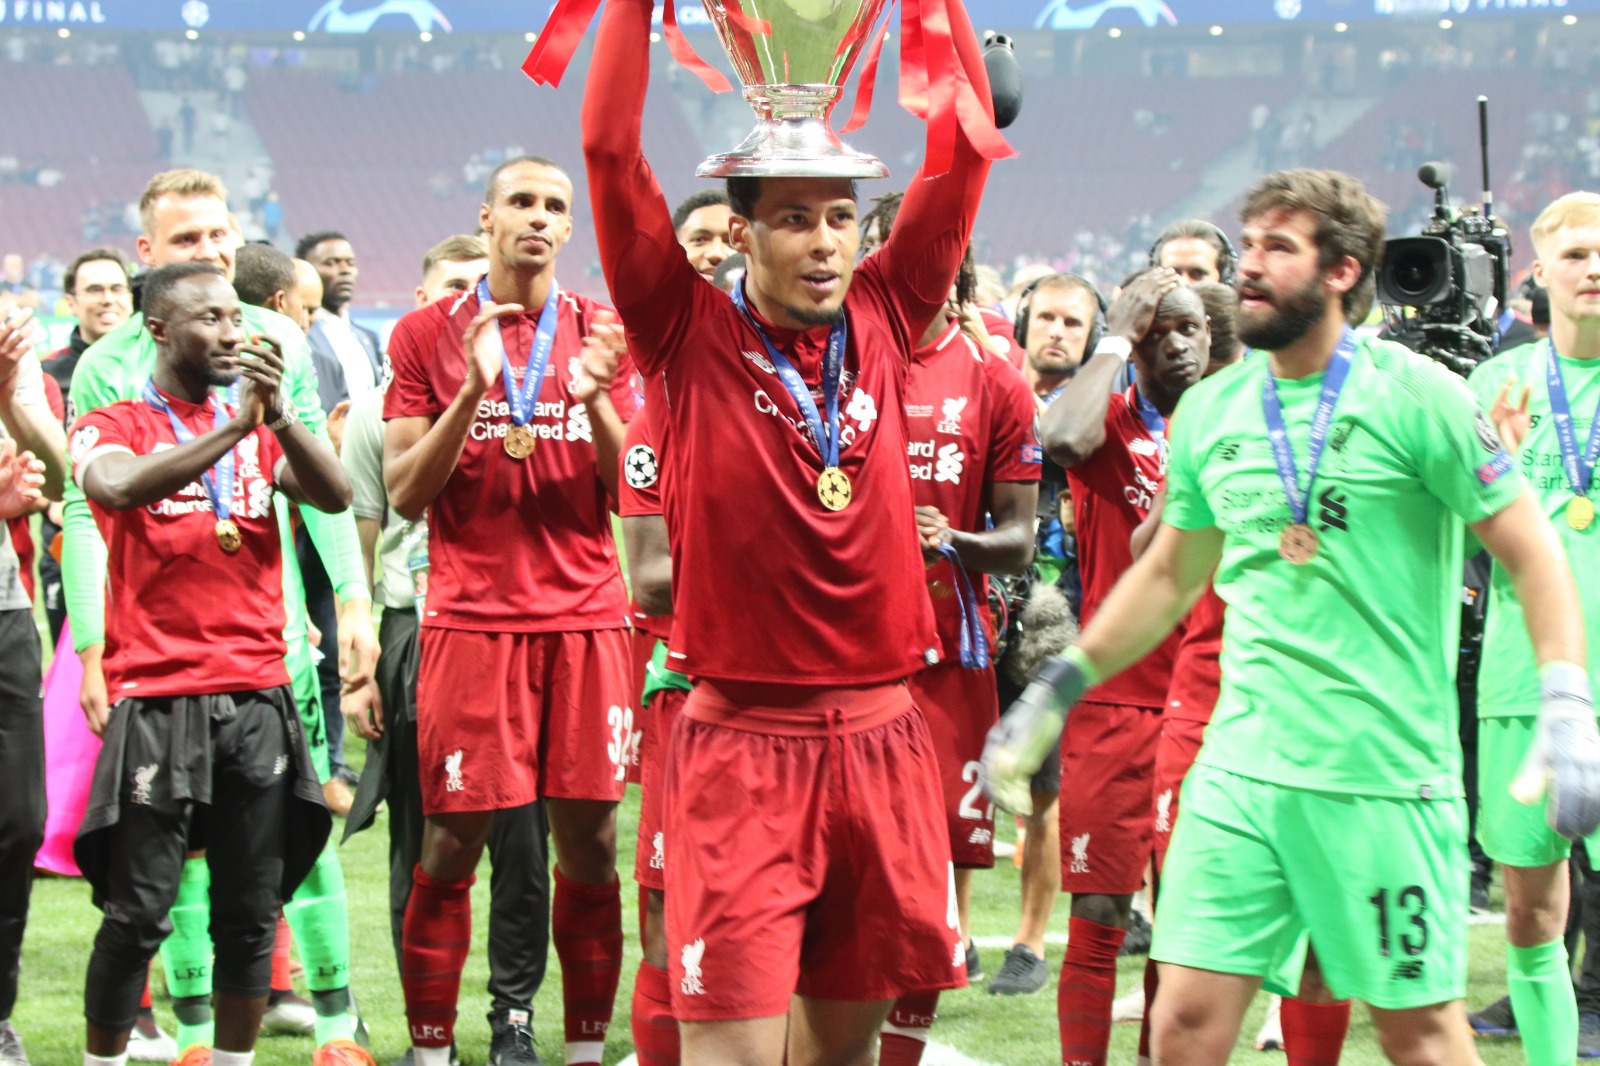 Van Dijk levanta la sexta Champions League del Liverpool. (Foto: Enrique Falcón)